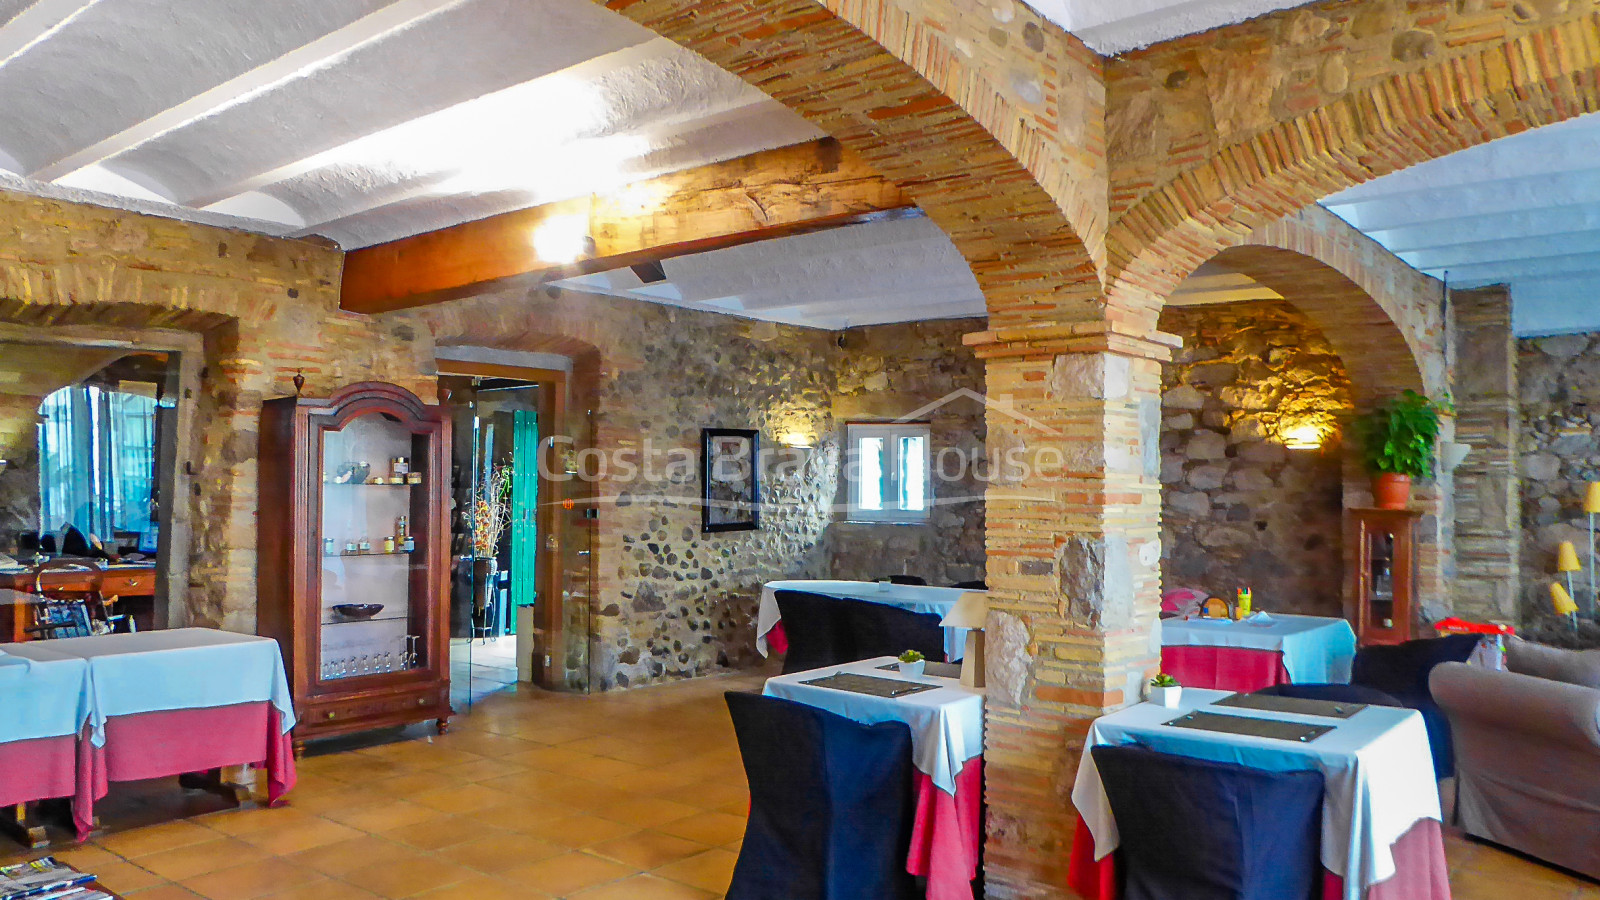 Casa señorial del S.XVII reconvertida en hotel en venta en Alt Empordà